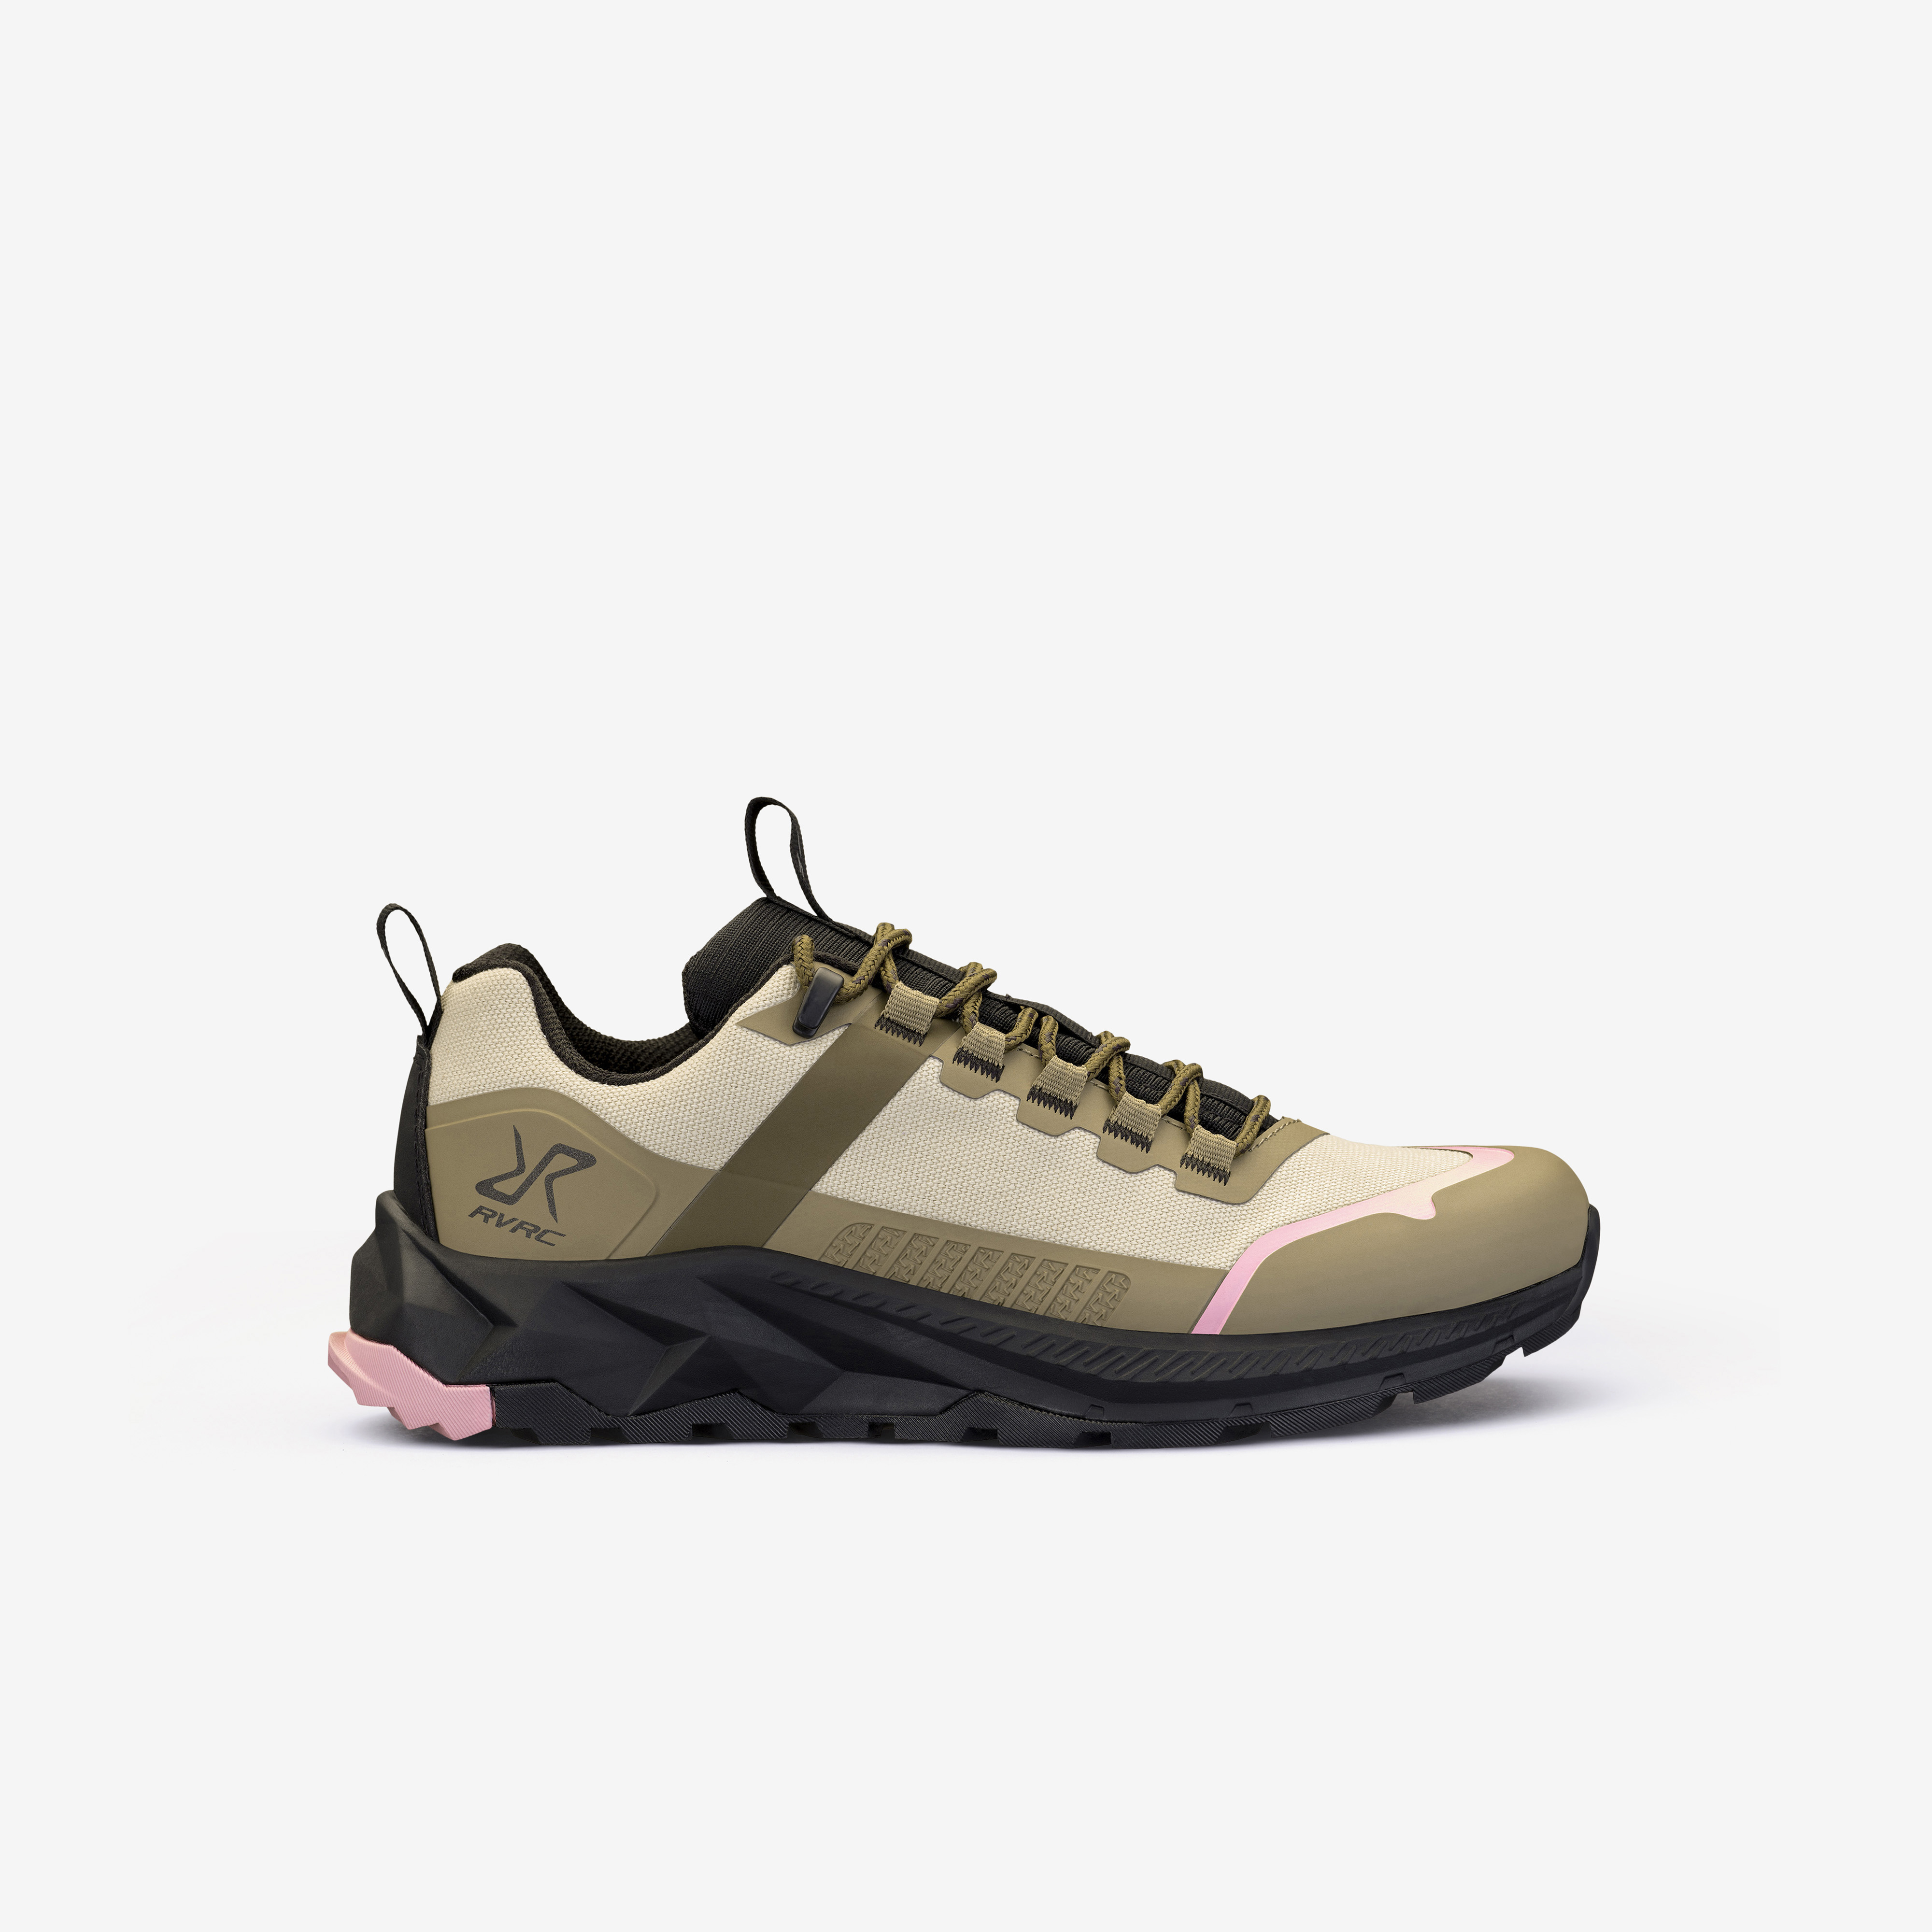 Phantom Trail Low Hiking Shoes – Dam – Rainy Black Storlek:38 – Skor